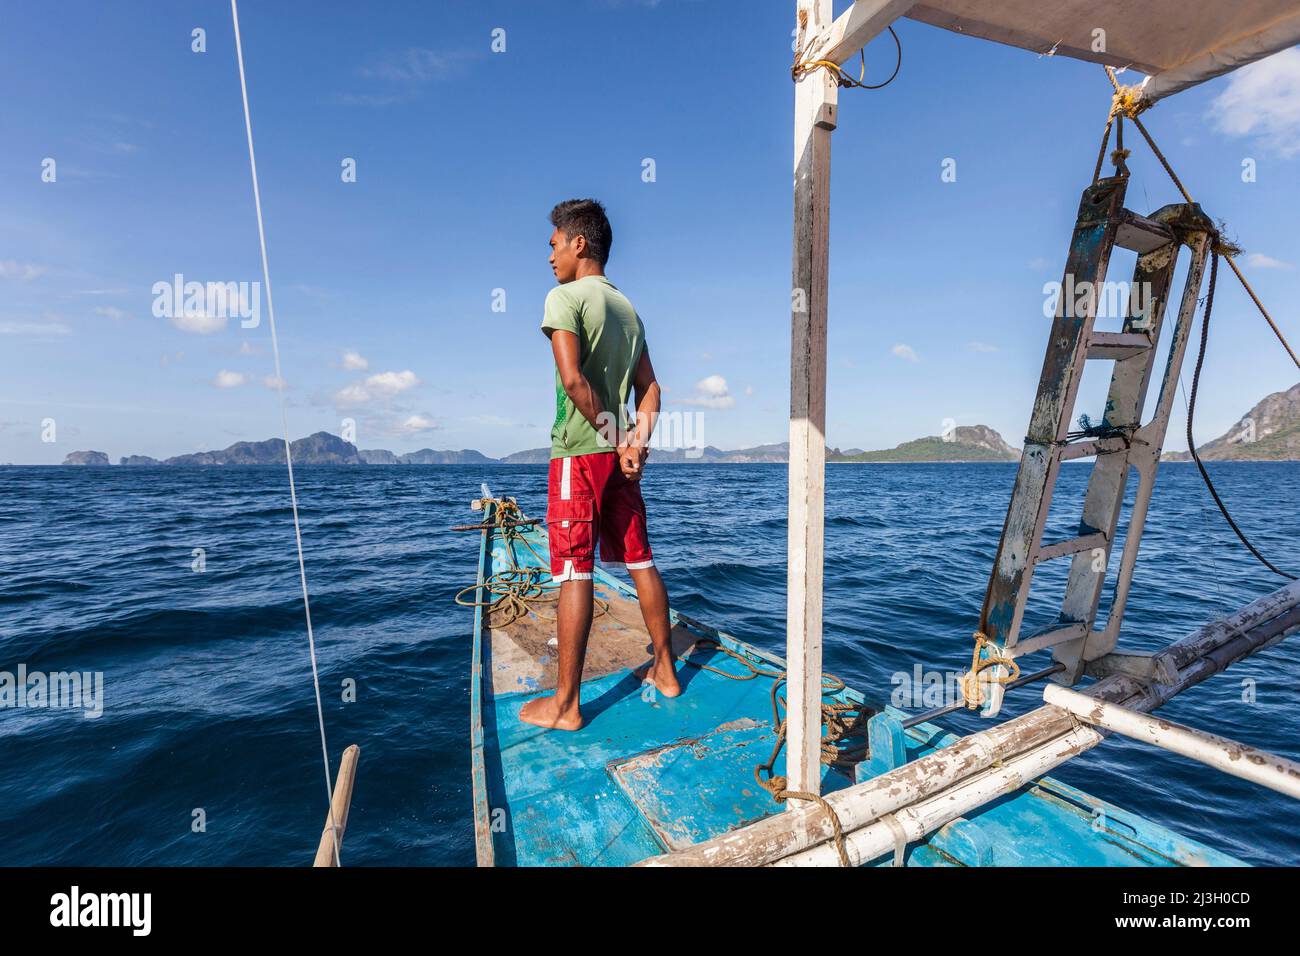 Philippinen, Palawan, El Nido, Bacuit-Archipel, junger philippinischer Seemann, der auf dem Bug seines Auslegerkanus auf dem Weg zur Insel Miniloc steht Stockfoto